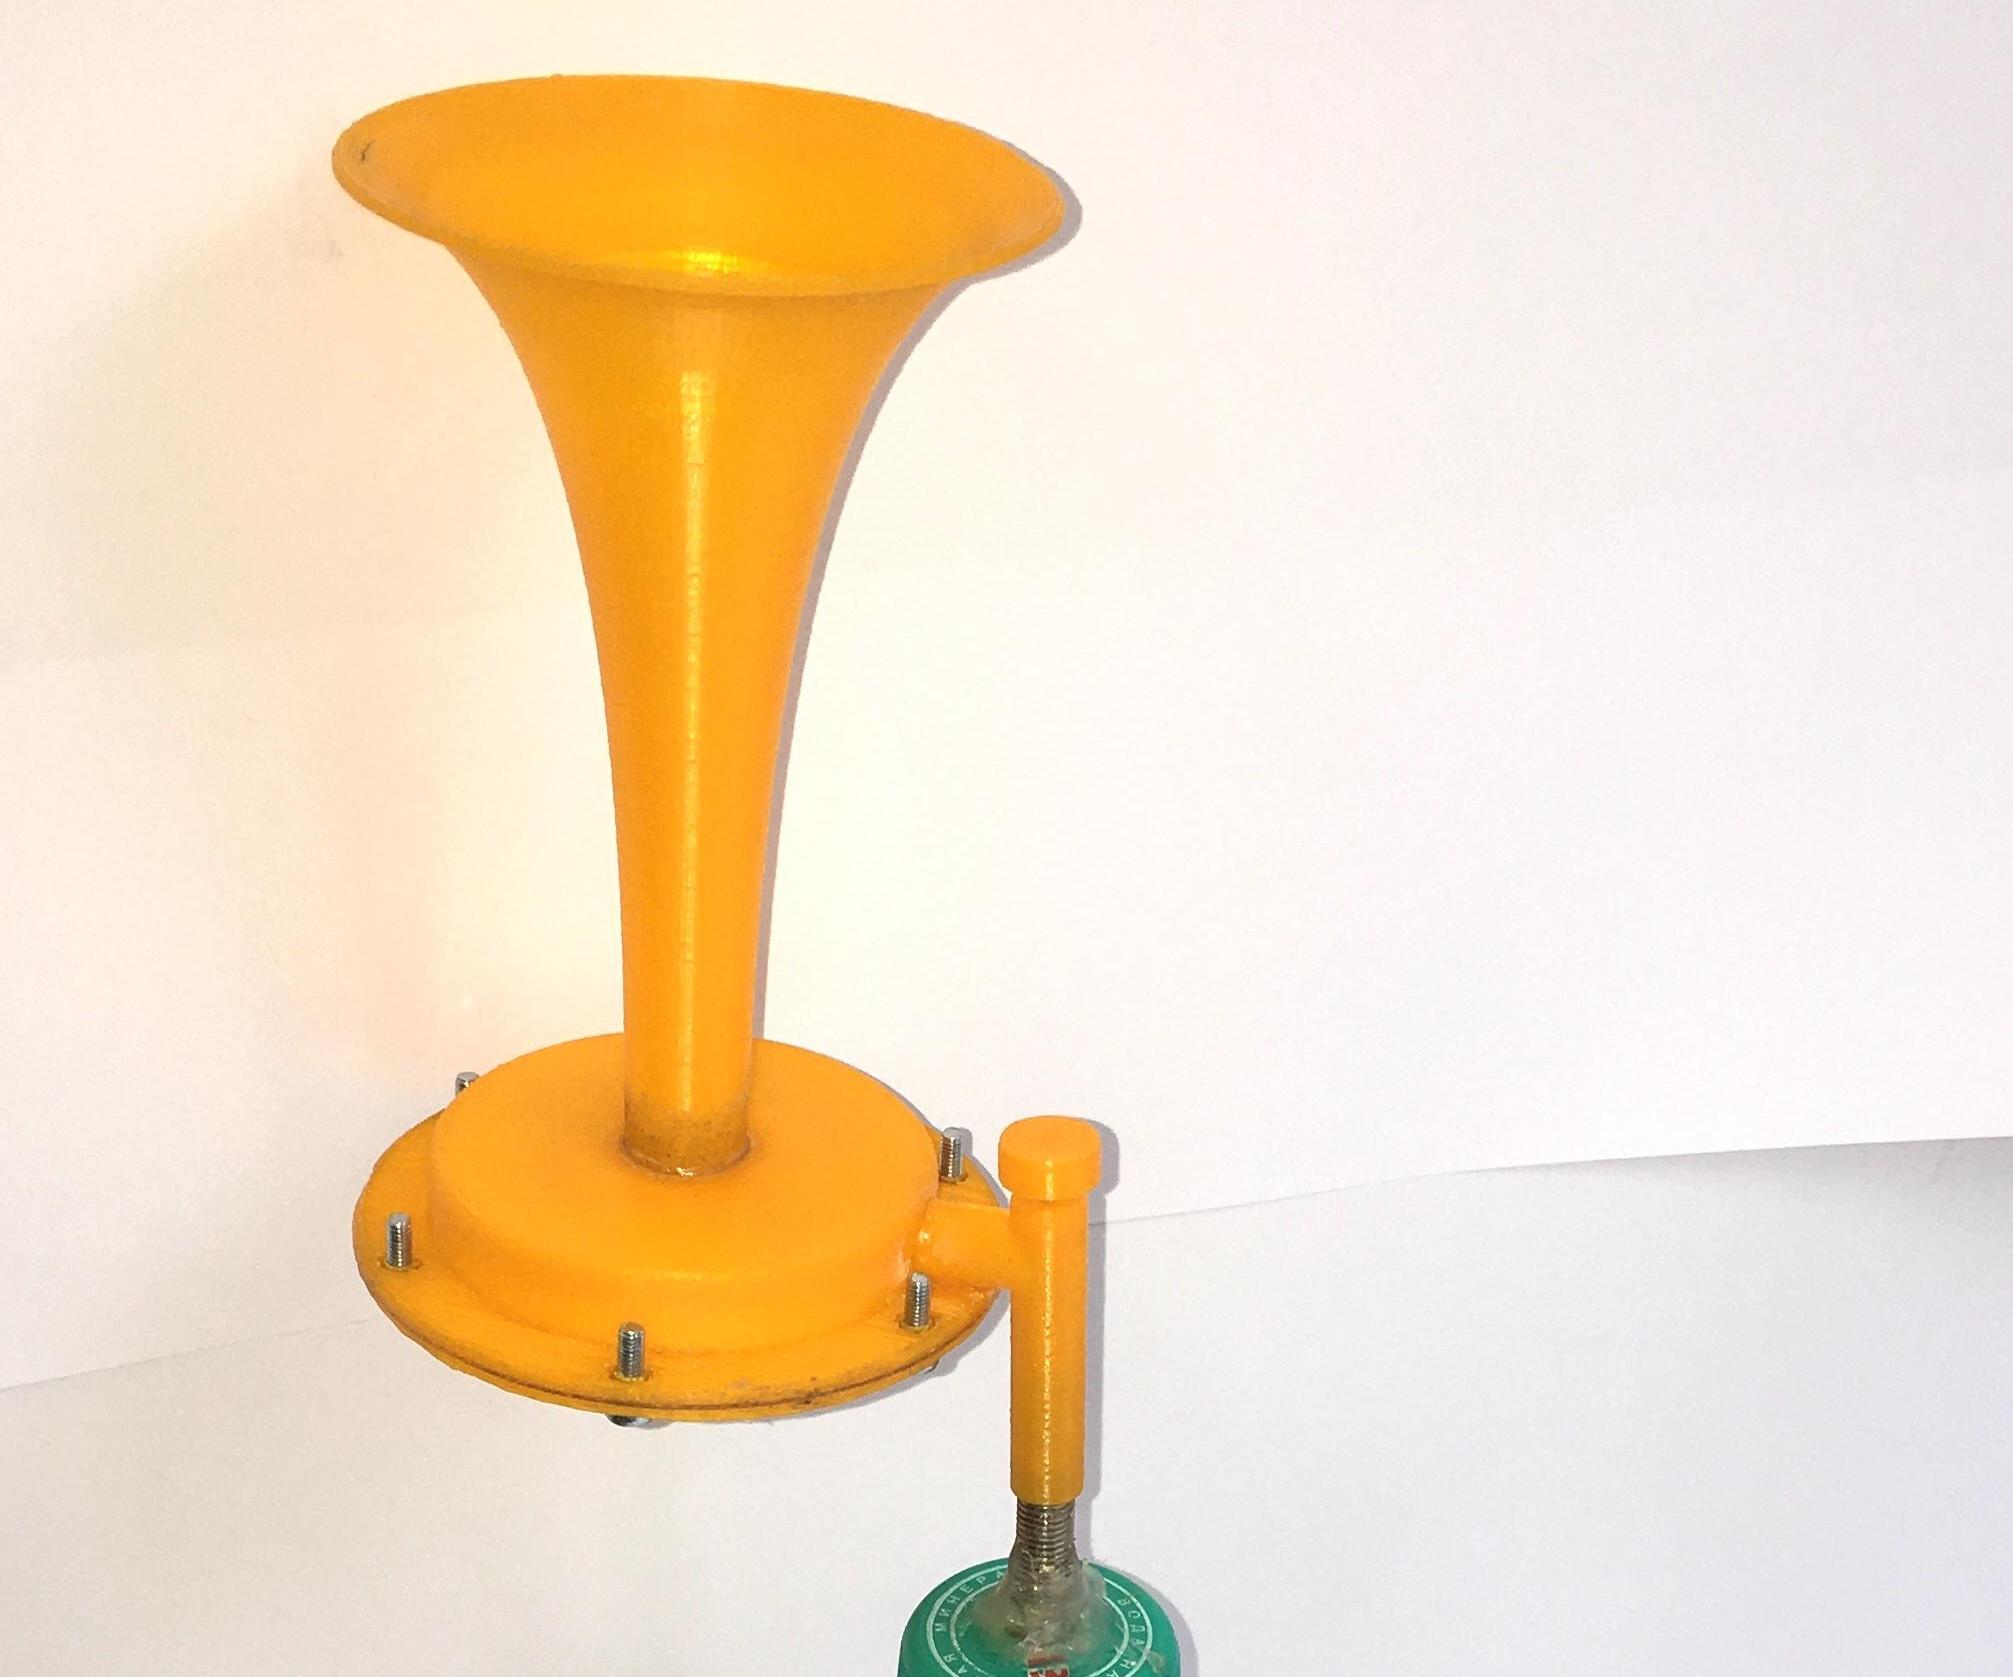 3D Printed Air Horn